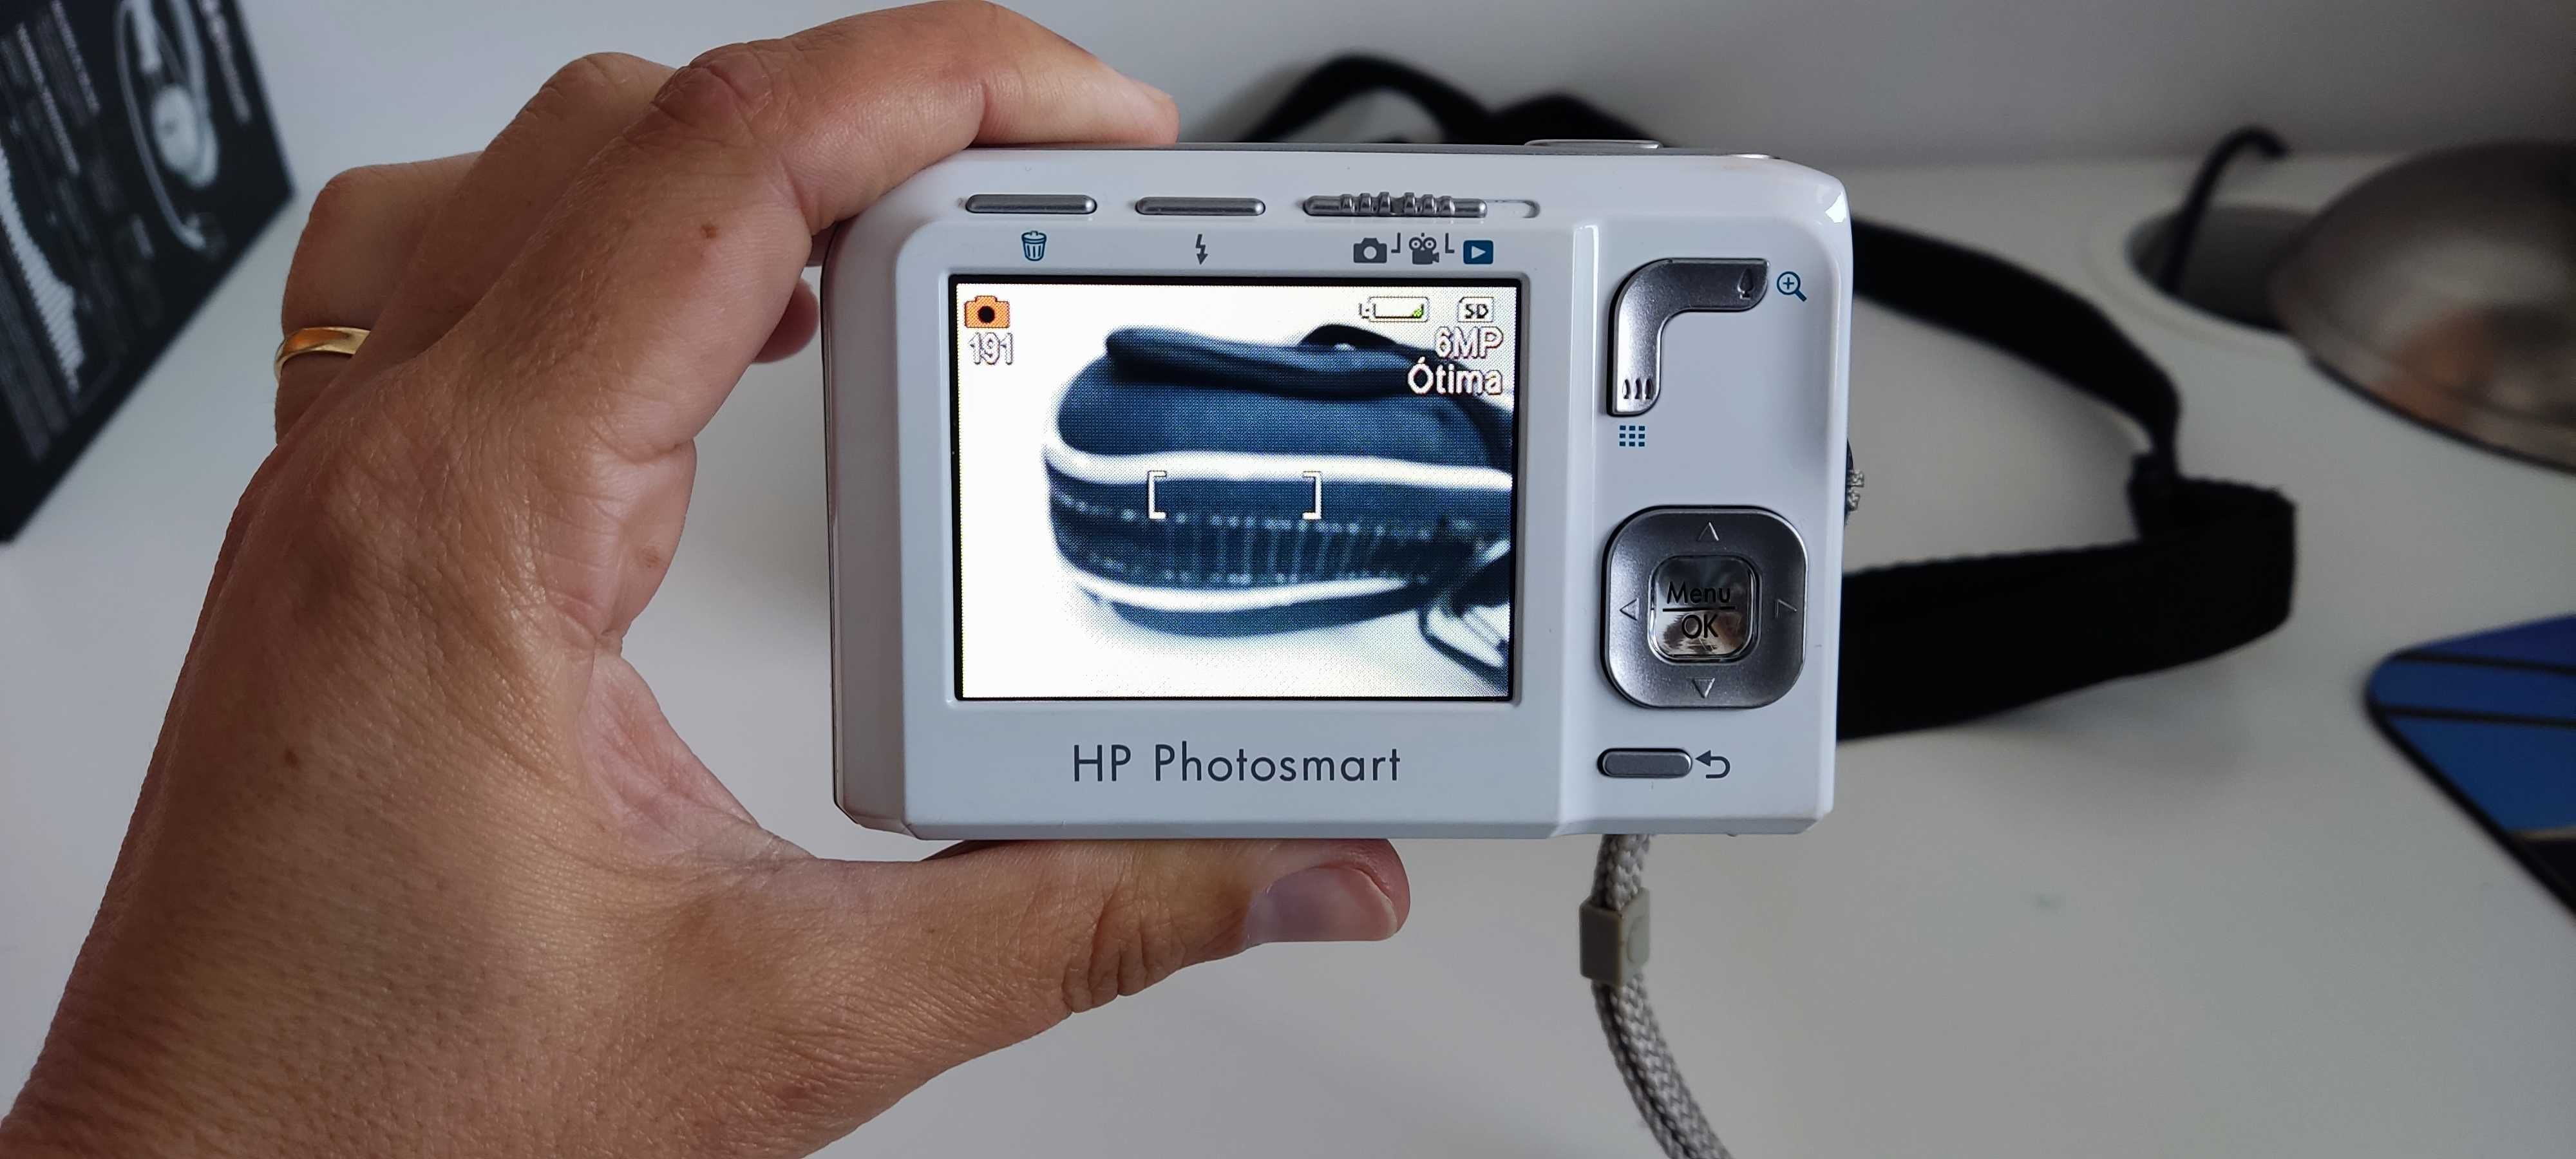 Máquina fotográfica HP, bolsa e cartão memória